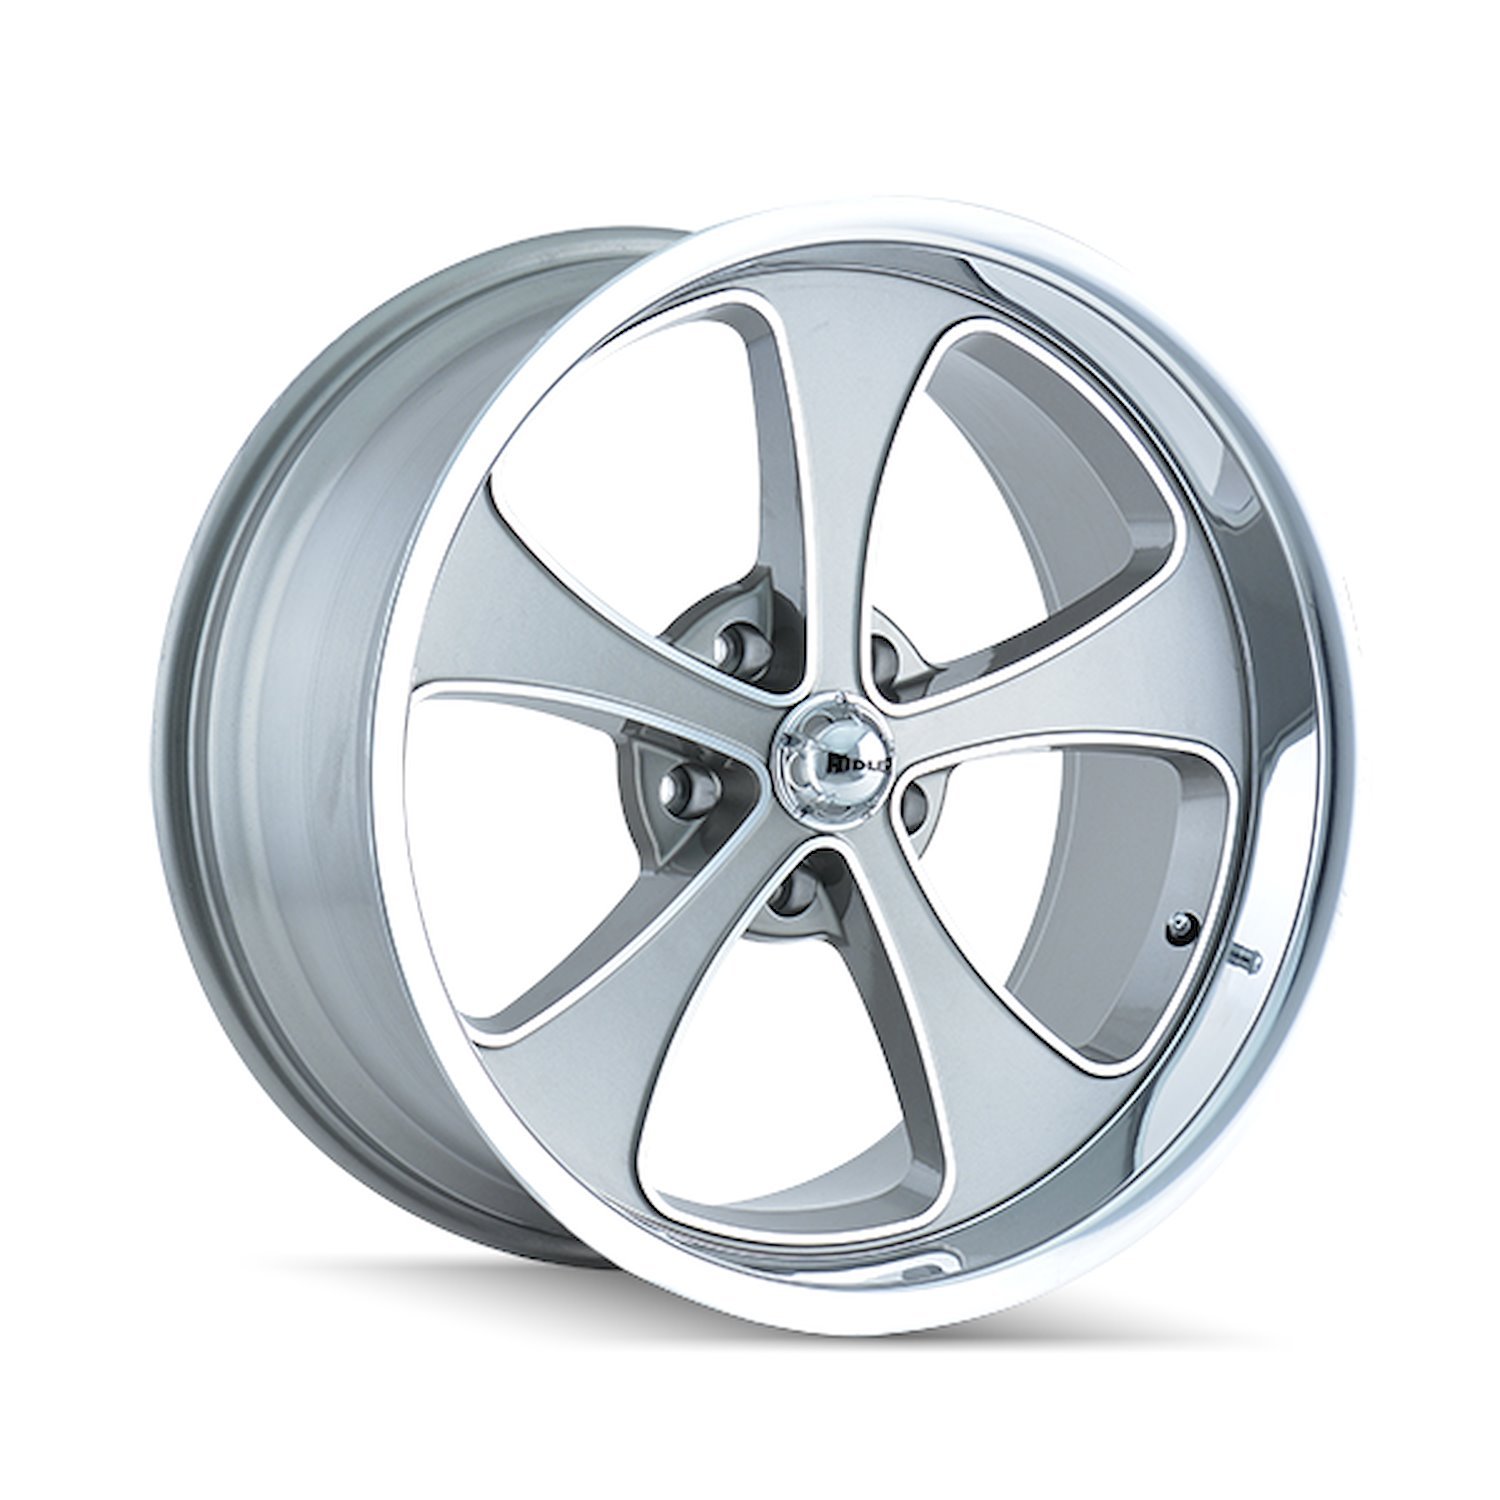 645-8861GP 645-Series Wheel [Size: 18" x 8"] Gloss Grey Machined/Polished Finish